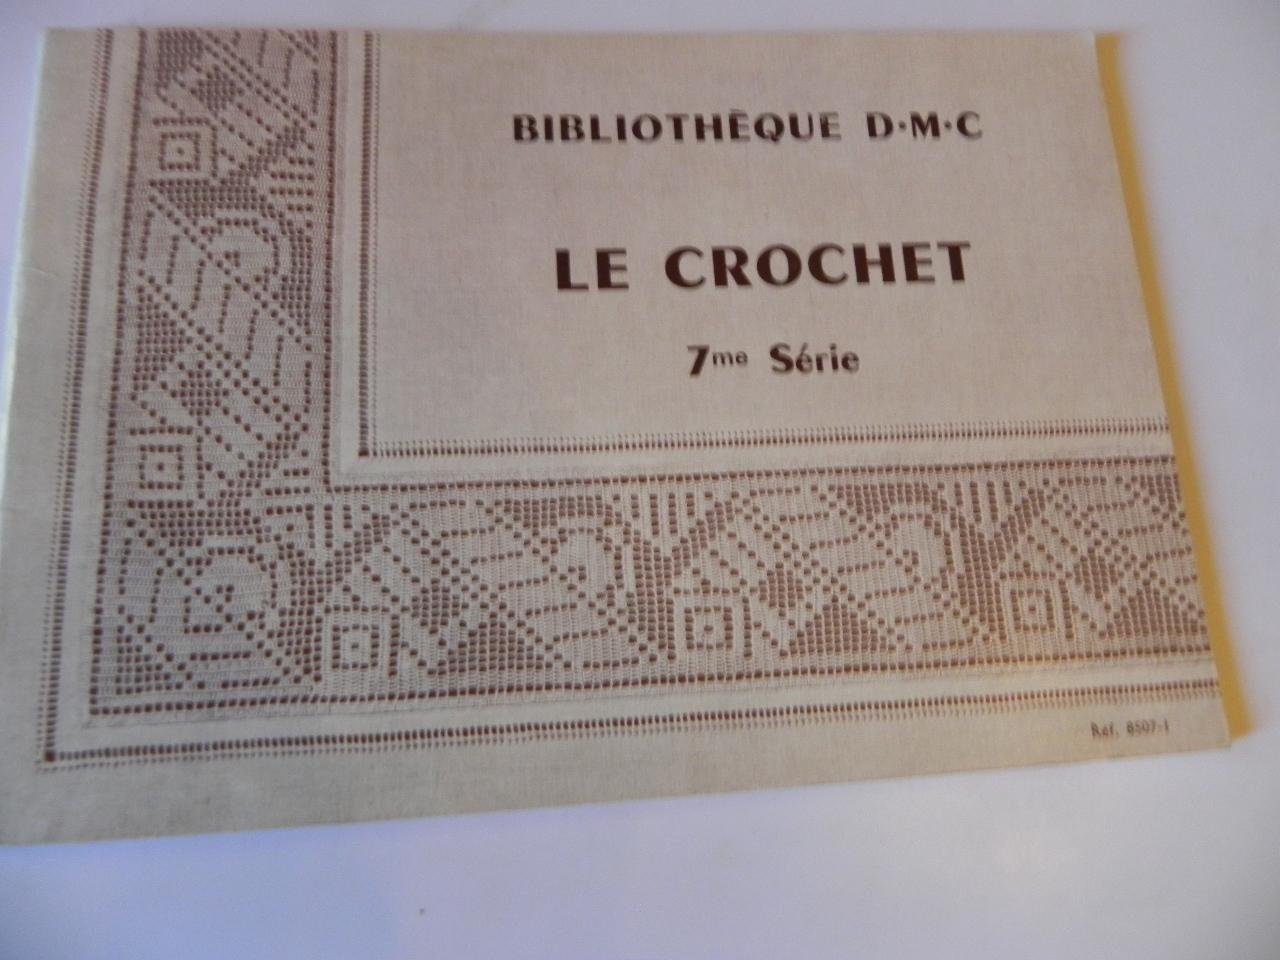  - Bibliotheque D.M.C. 7me Serie  Le Crochet